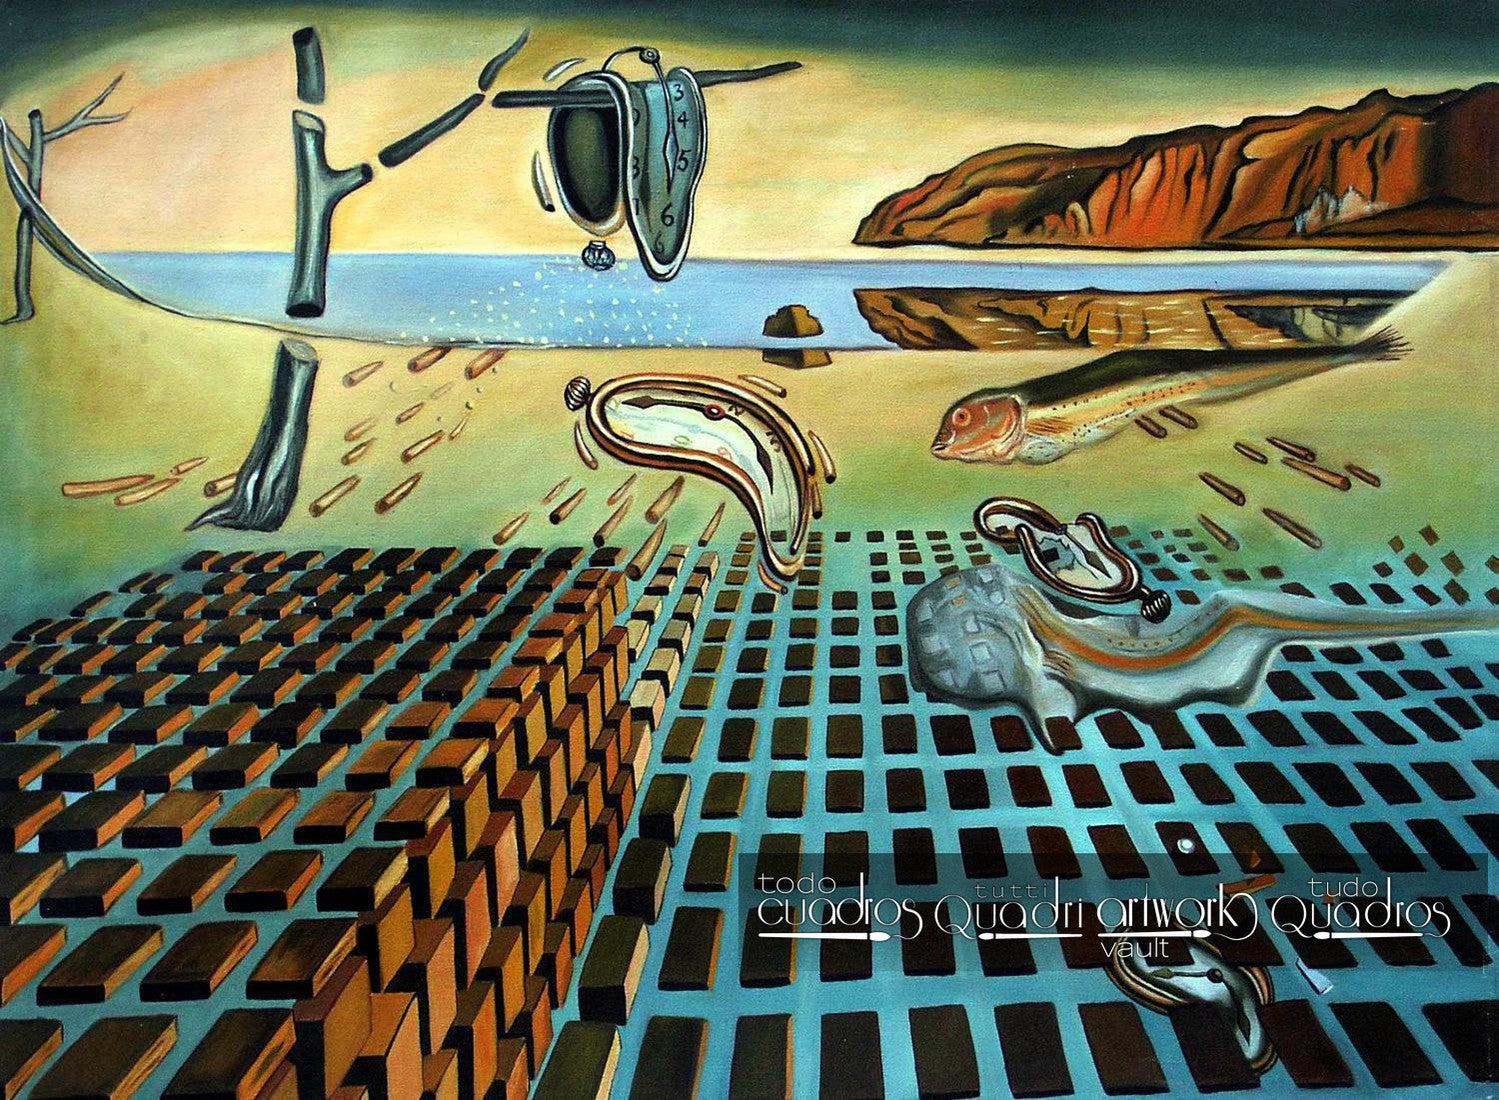 La desintegración de la persistencia de la memoria, Dalí